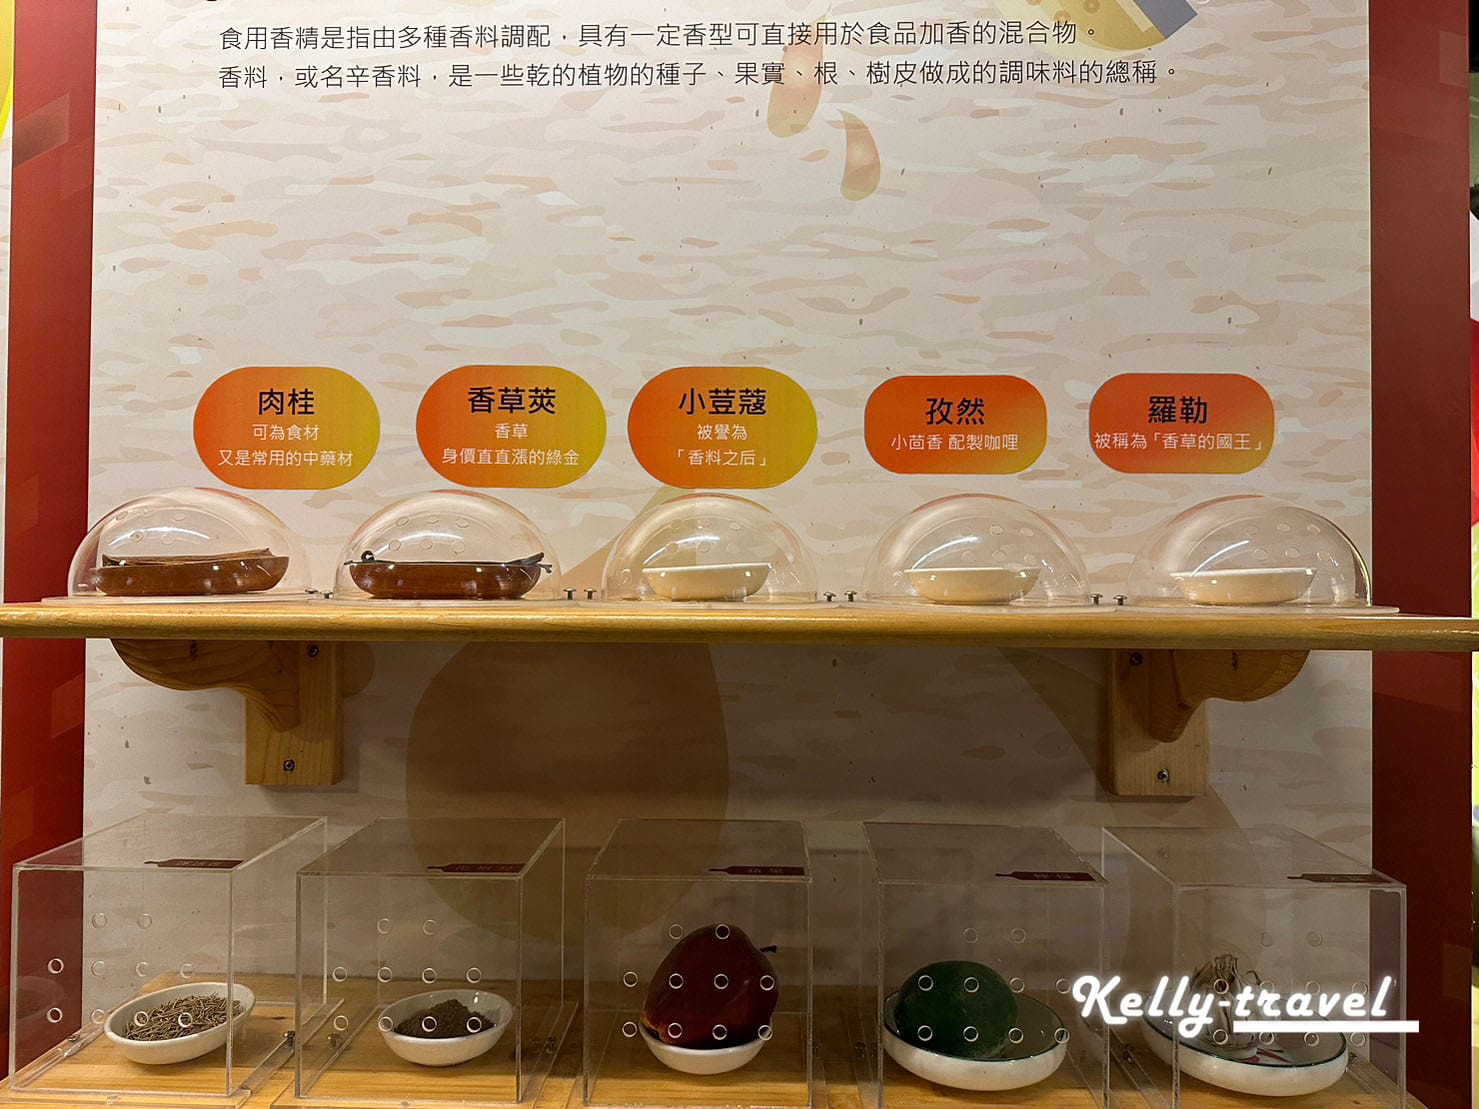 彰化景點觀光工廠台灣優格餅乾學院魔法世界